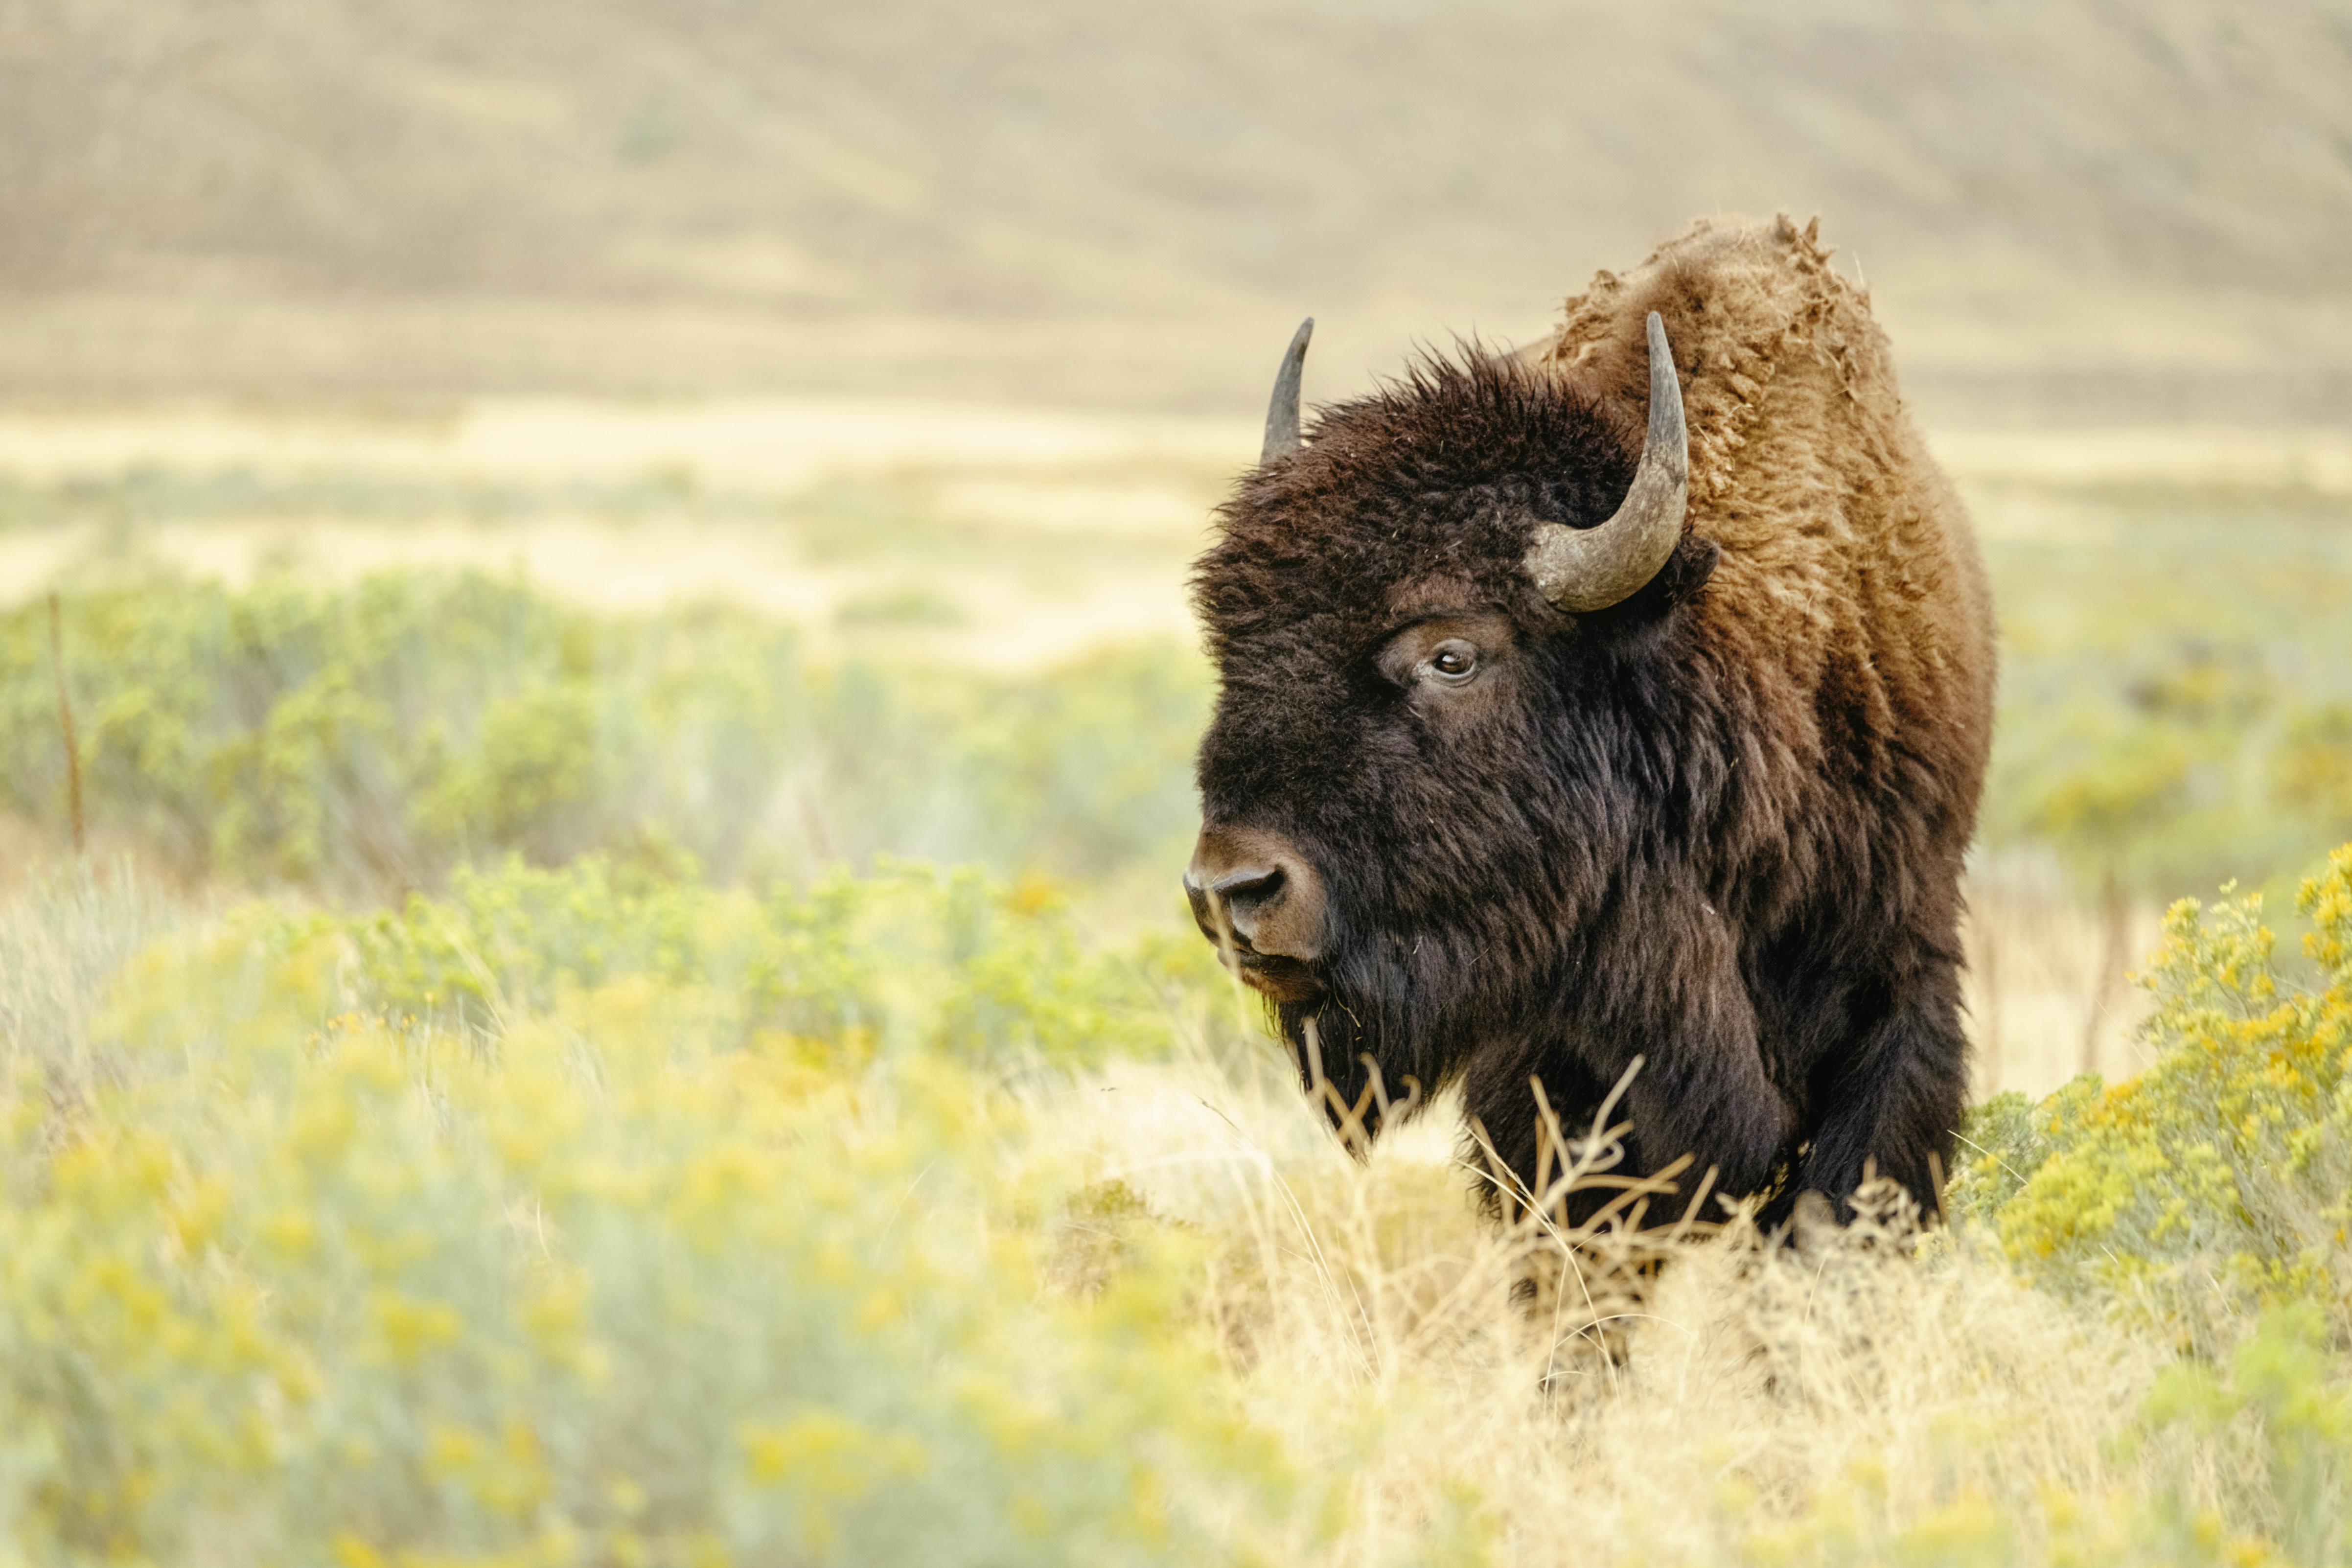 Bringing Back the Bison – National Geographic Blog